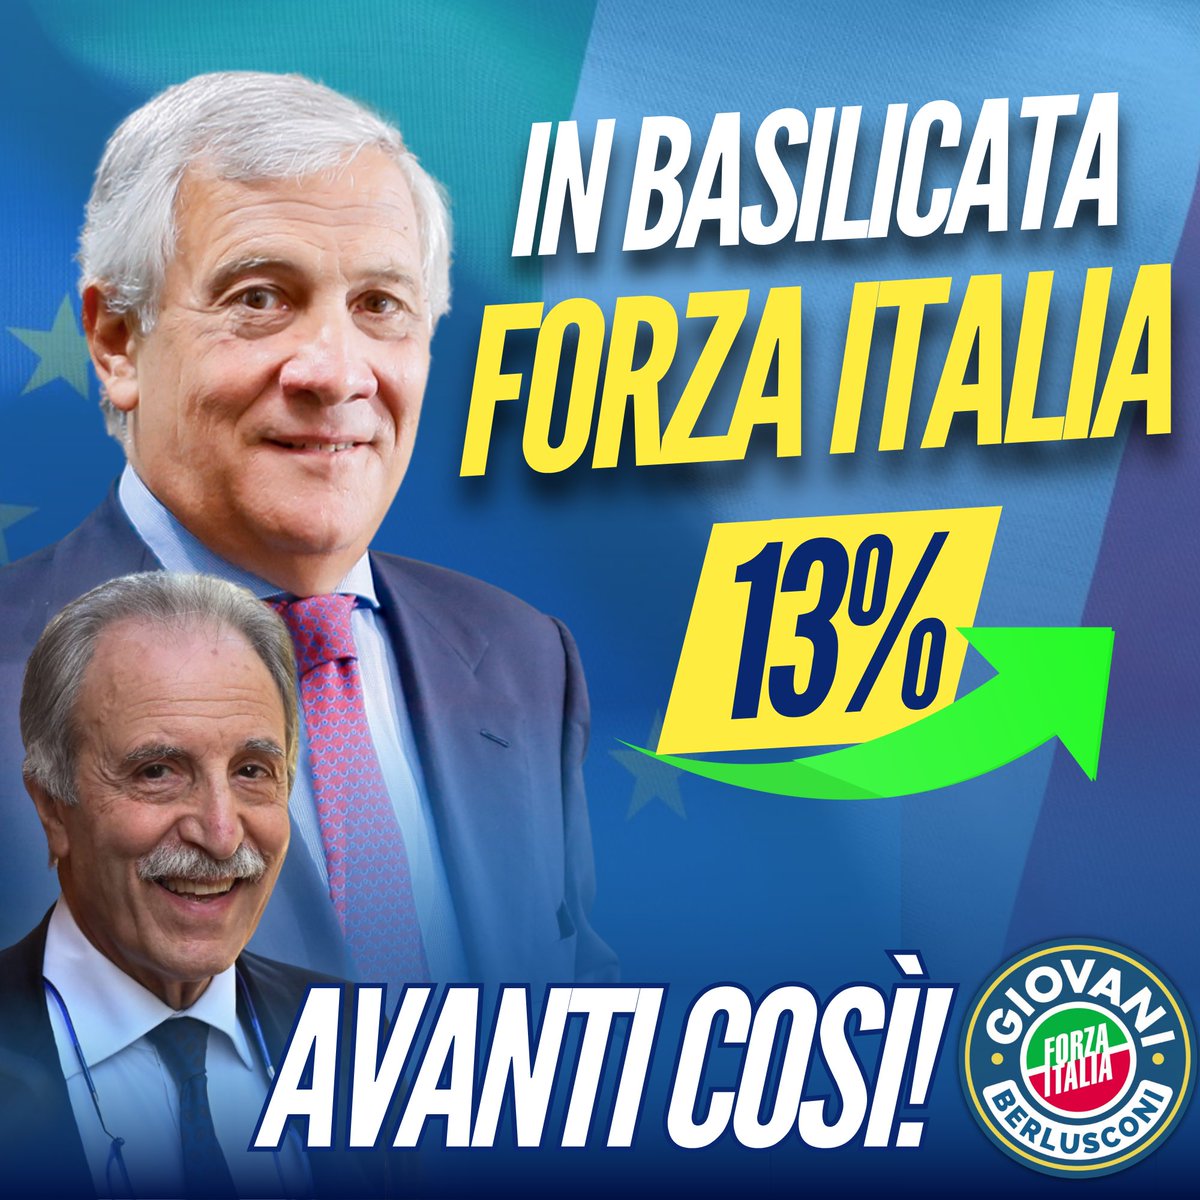 Vittoria in Basilicata targata @forza_italia ! Vito Bardi viene riconfermato Presidente e il nostro partito sotto la guida di @Antonio_Tajani diventa il secondo della coalizione. Avanti così, verso le europee! 🇪🇺